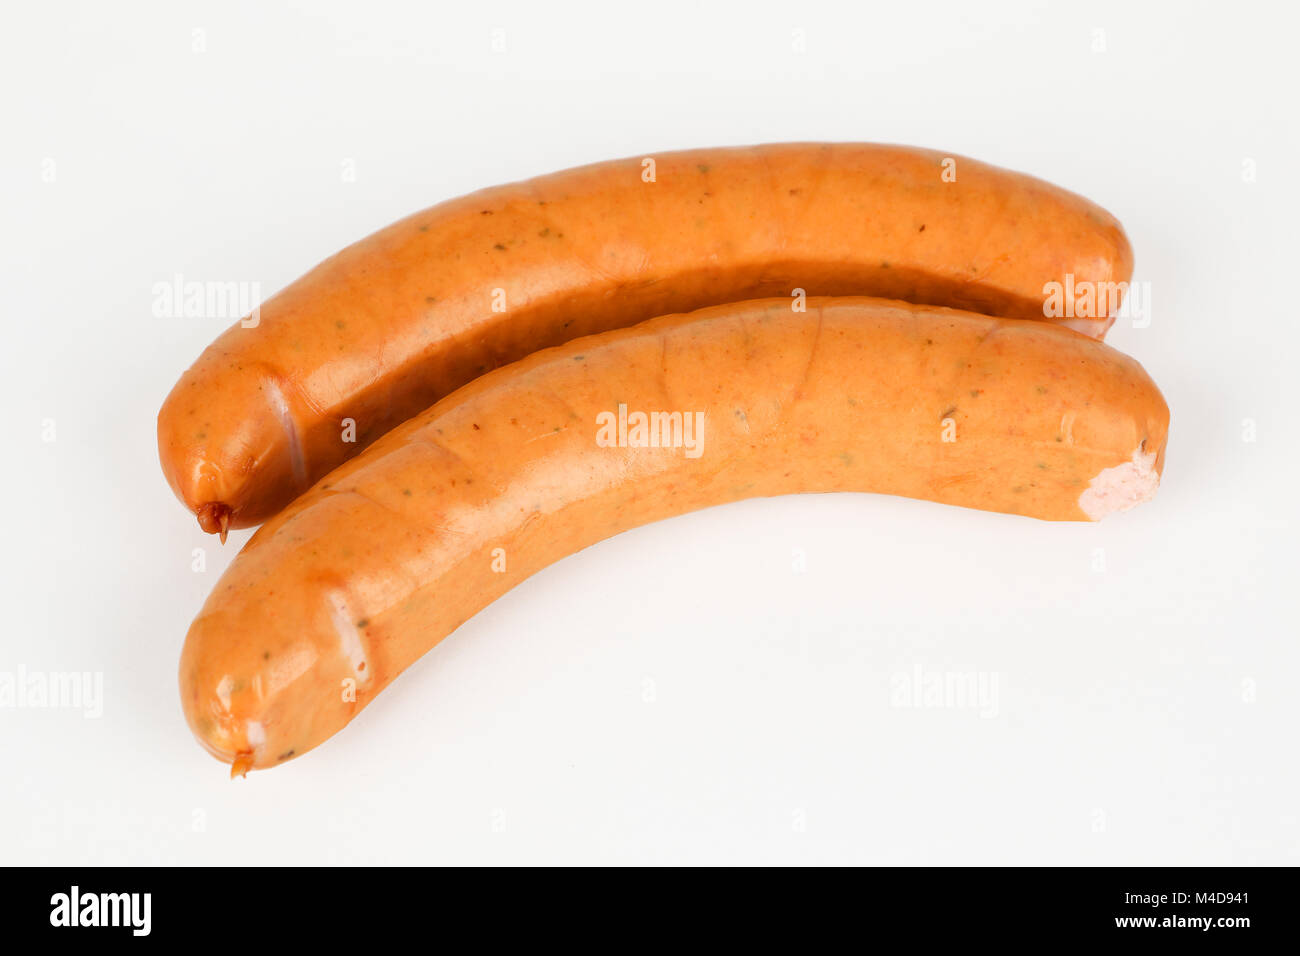 polish smoked sausage Stock Photo